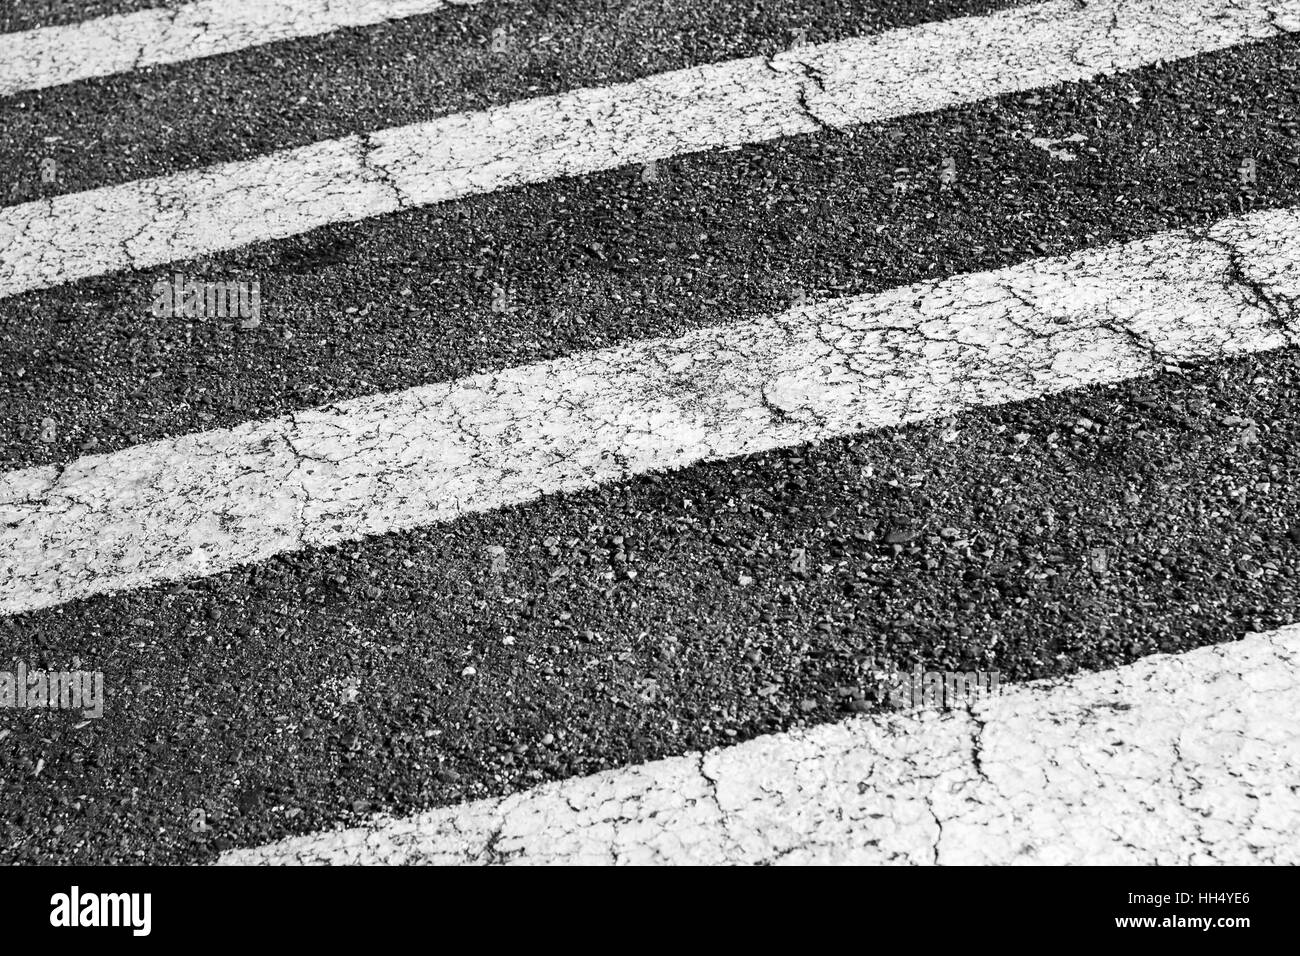 Zebra. Passage pour piétons, marquage routier, bandes blanches sur la chaussée d'asphalte foncé, fond photo Banque D'Images